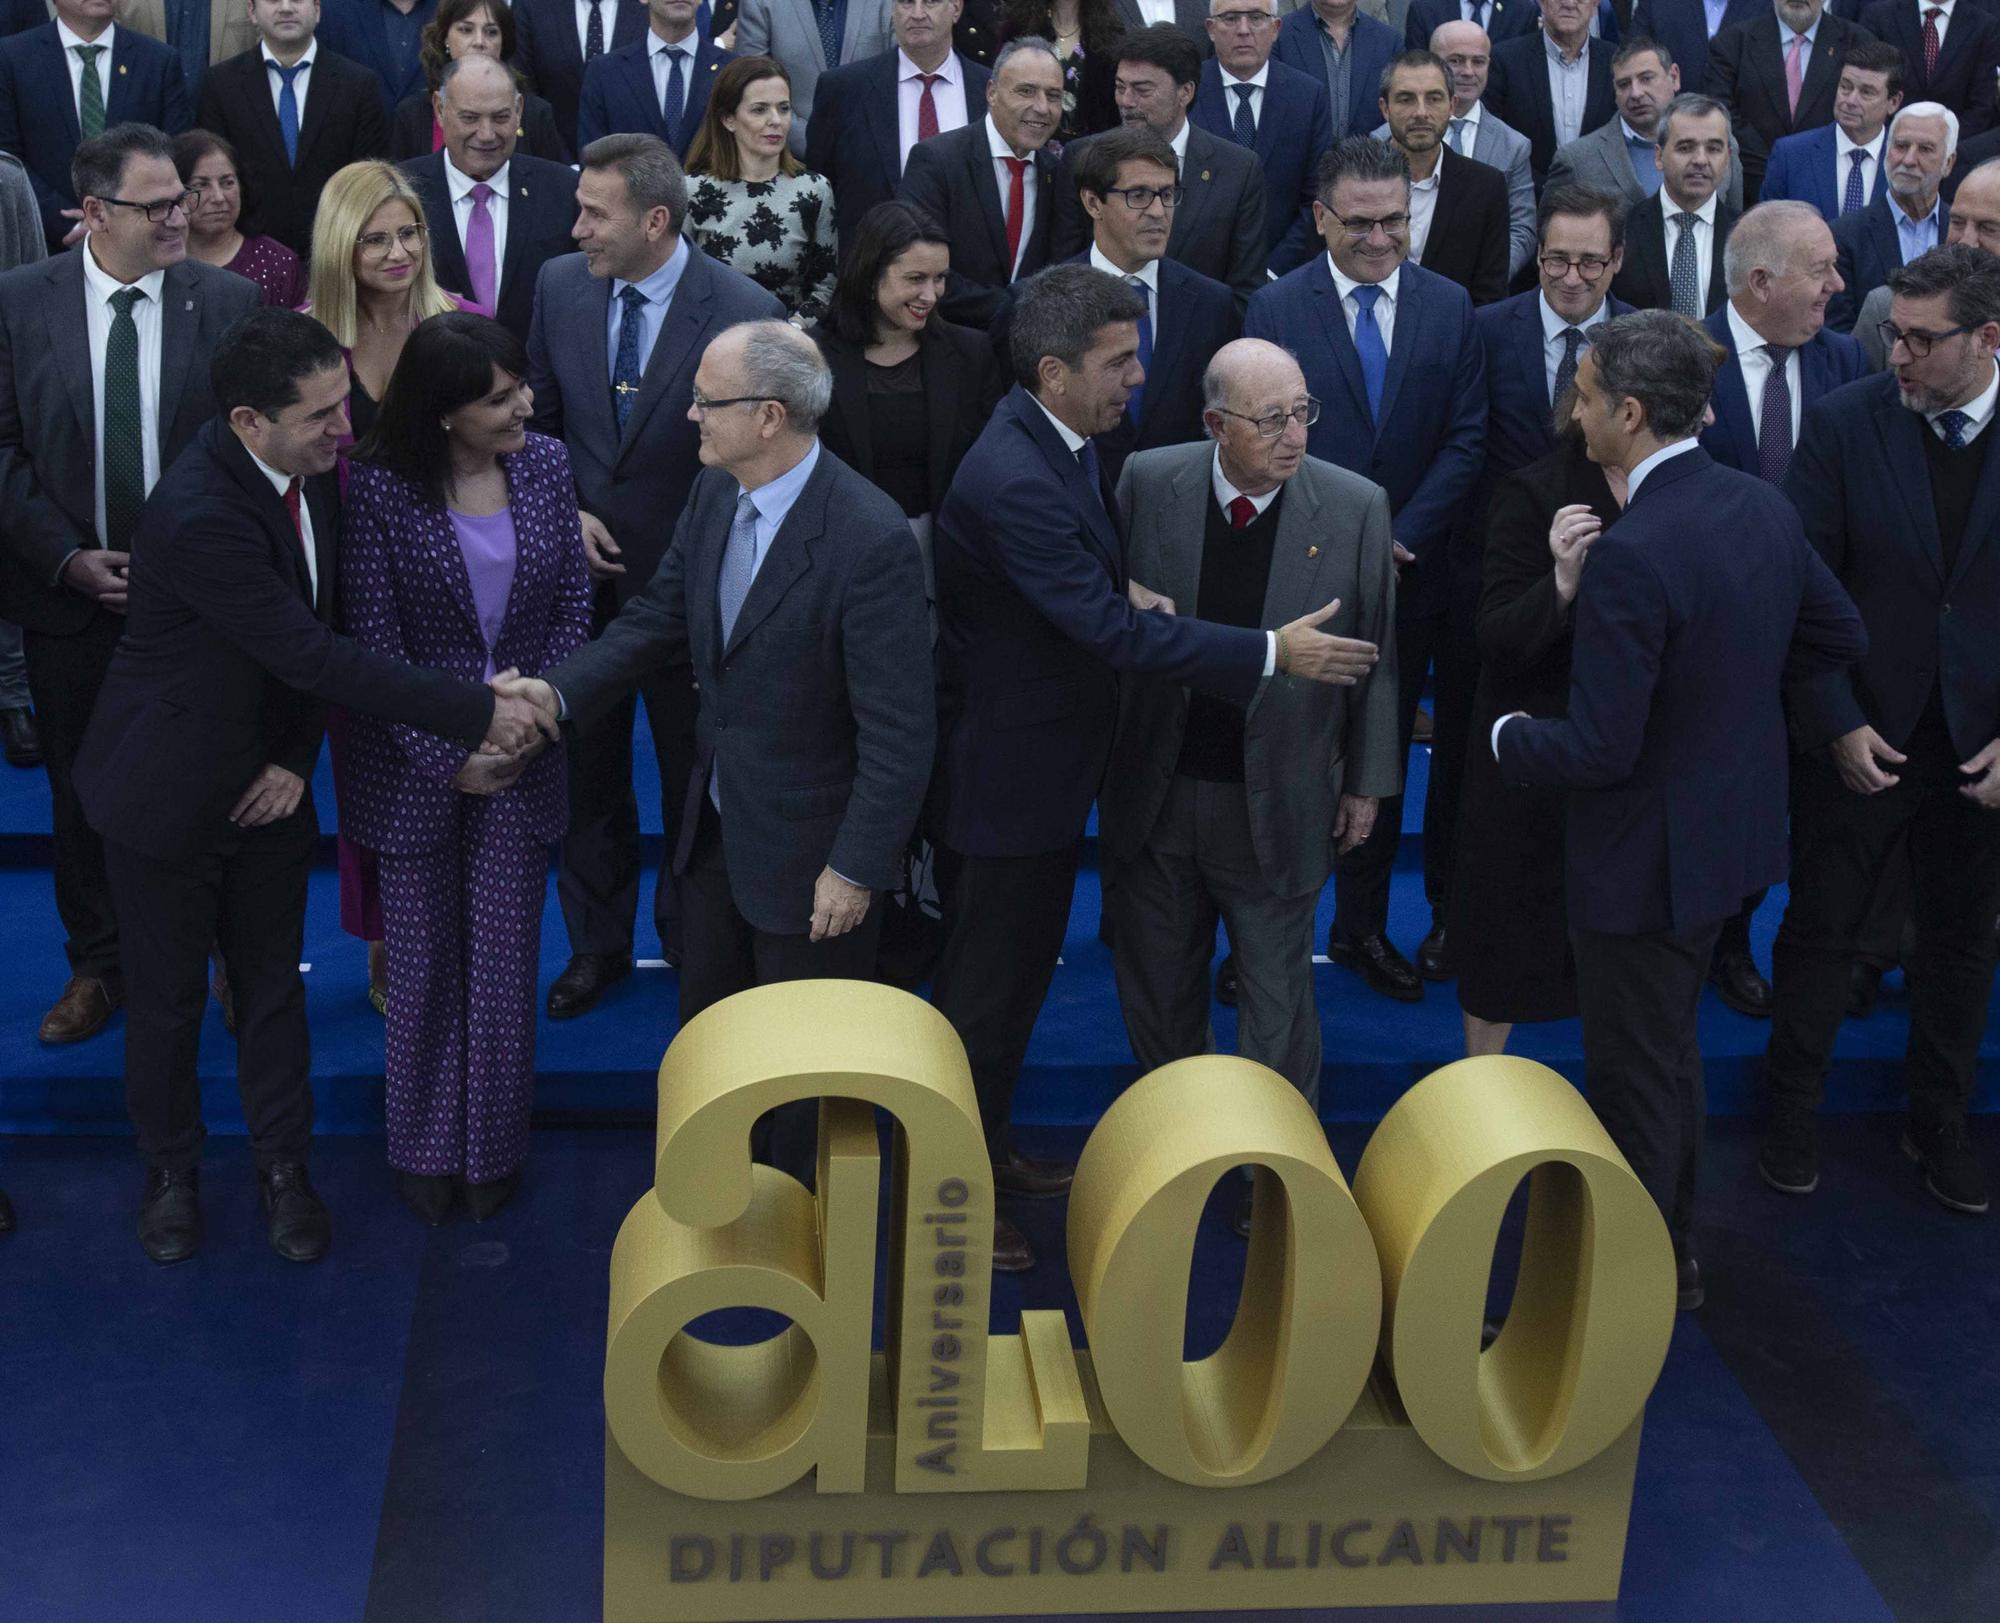 La Diputación subraya su papel vertebrador en el acto de clausura del 200 aniversario